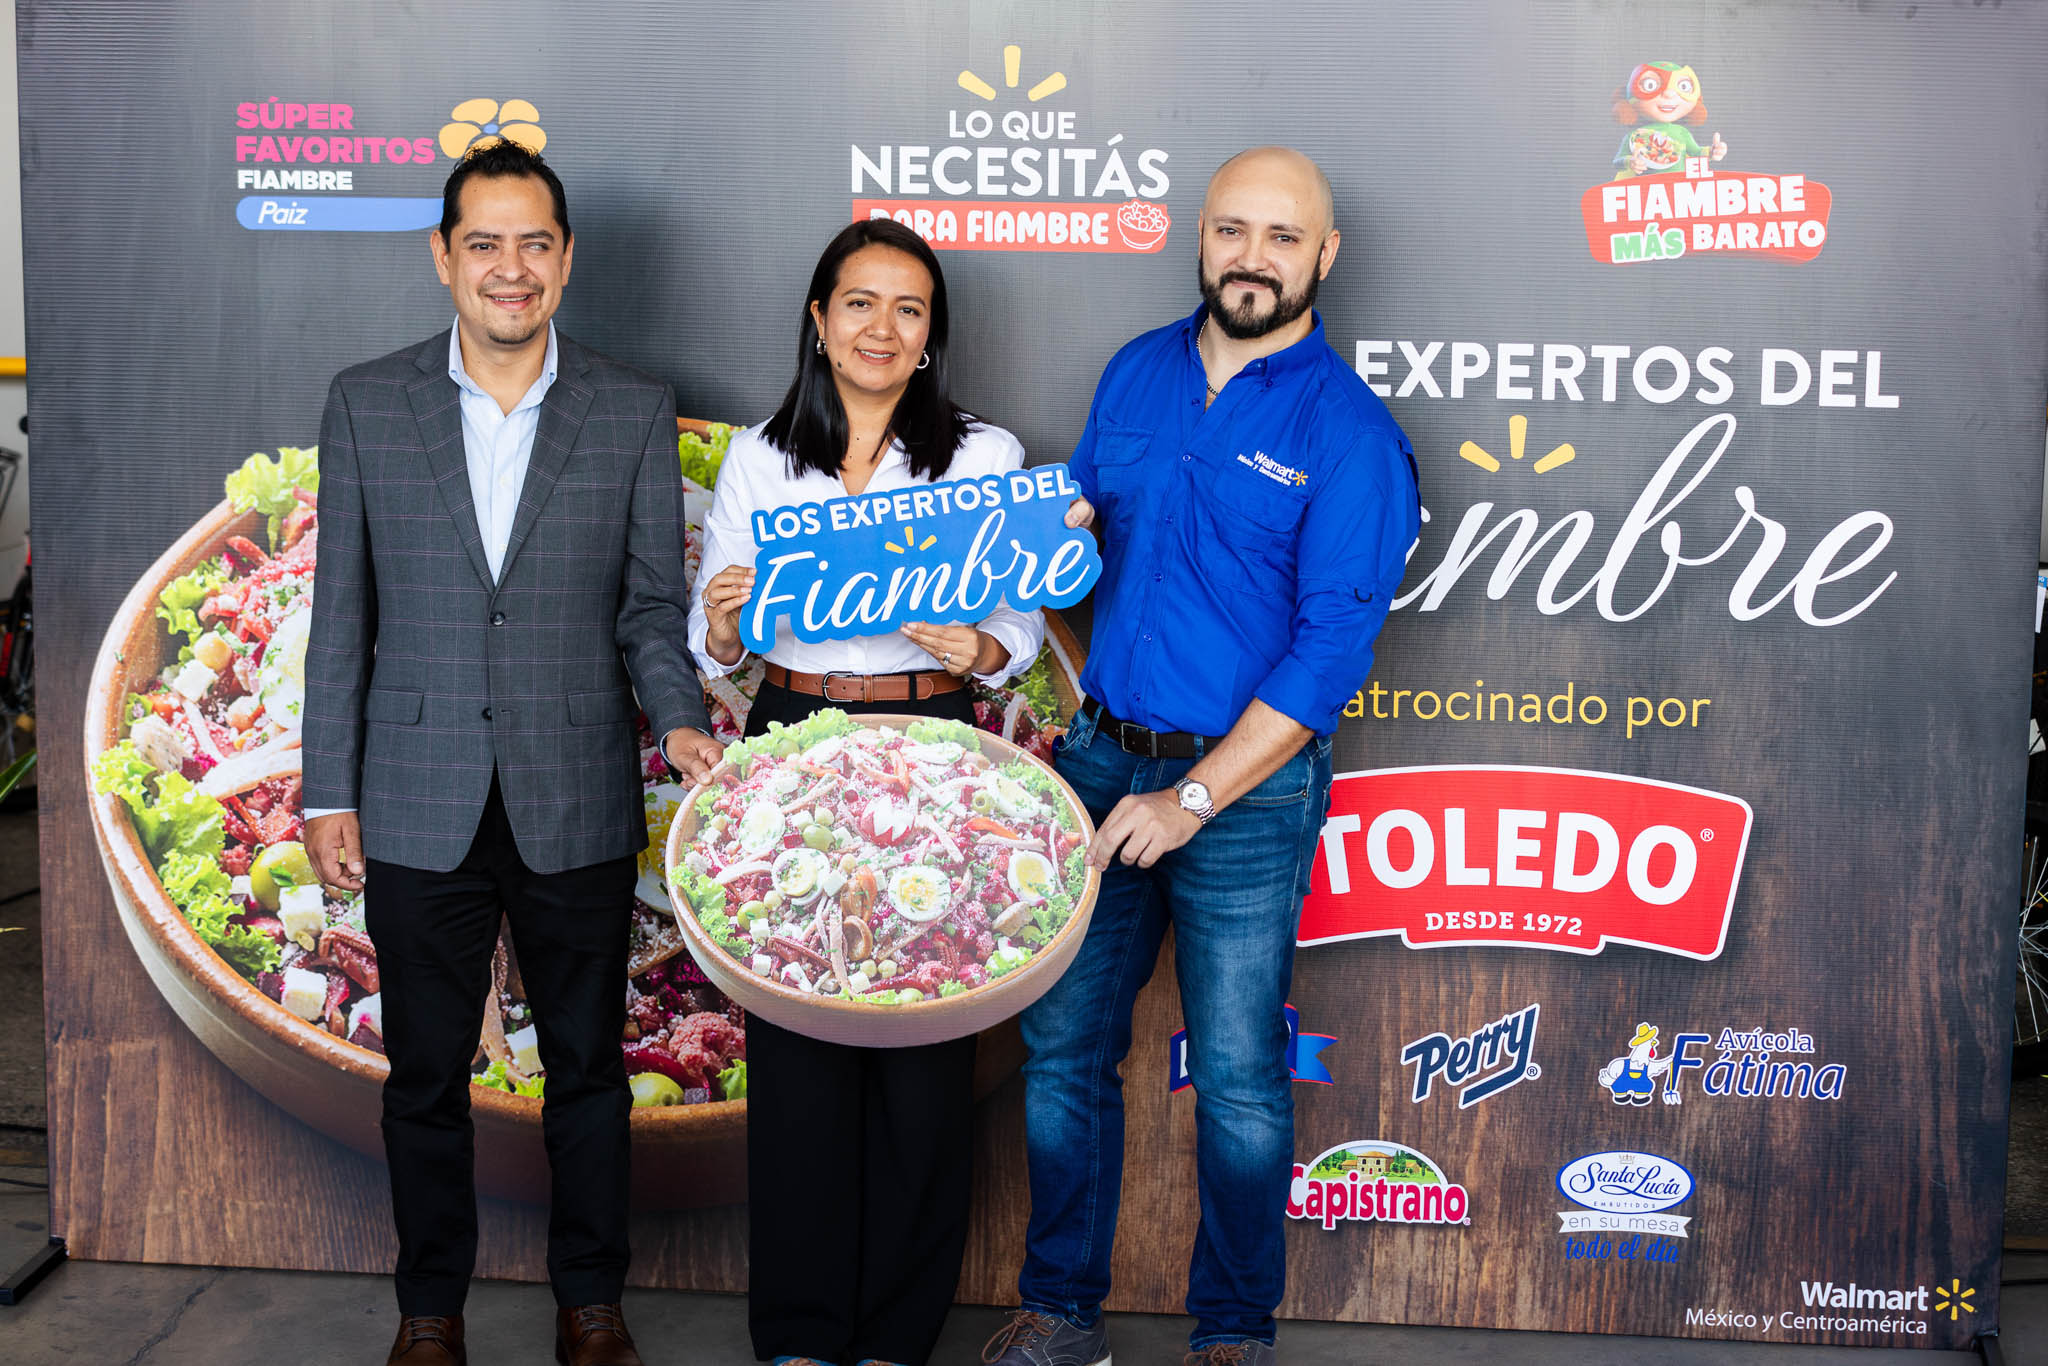 Walmart celebra el sabor y la tradición guatemalteca con el concurso “Los Expertos del Fiambre»